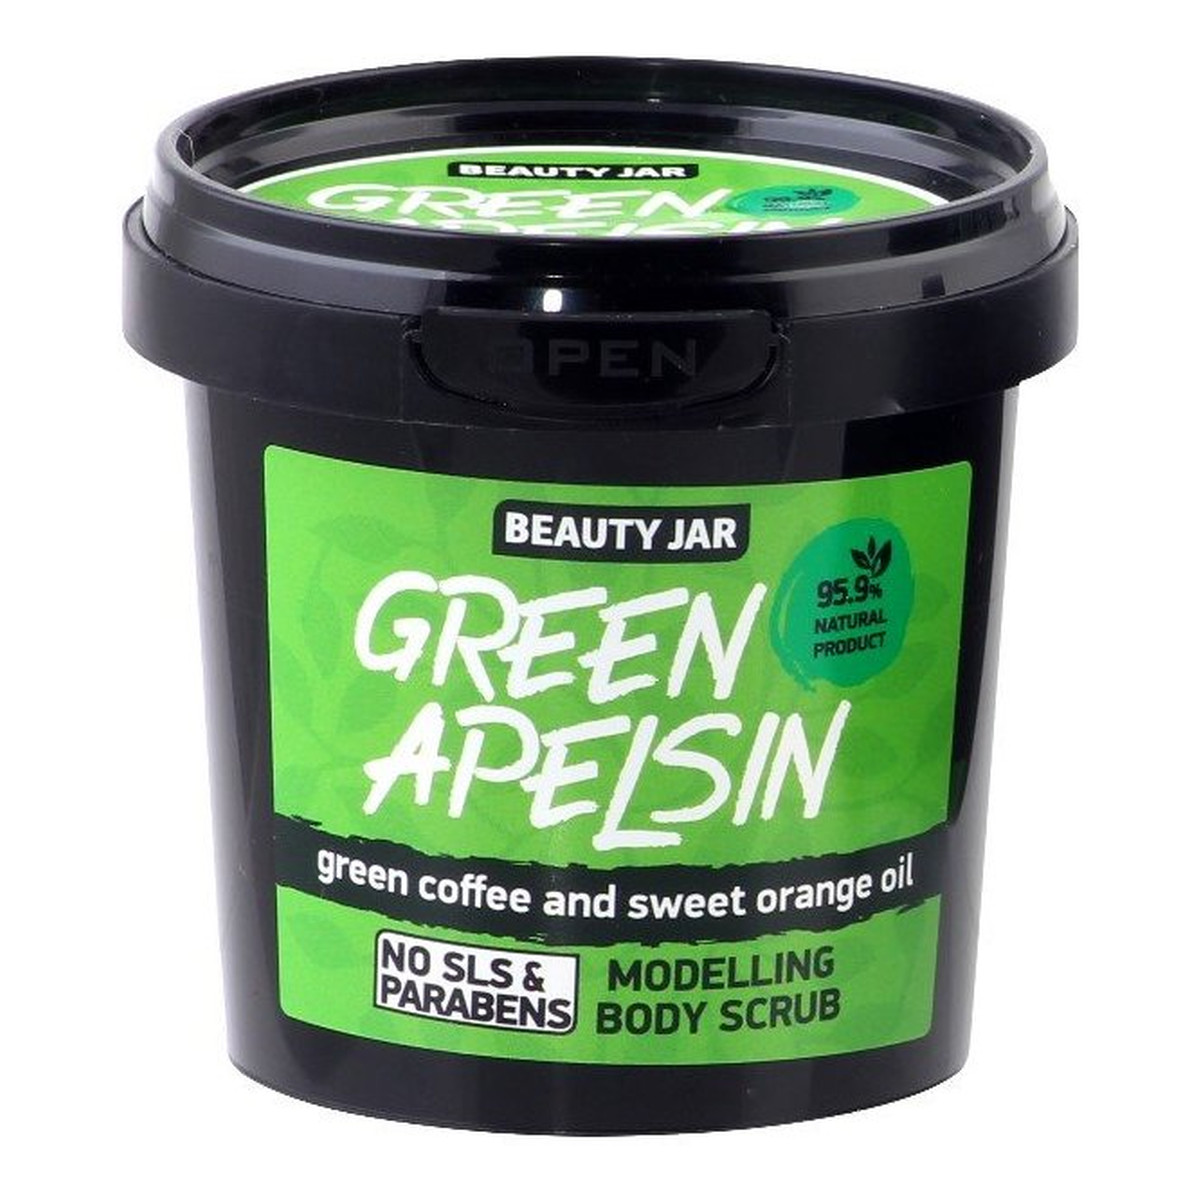 Beauty Jar Green Apelsin Modelujący scrub do ciała z zieloną kawą i słodką pomarańczą 200g